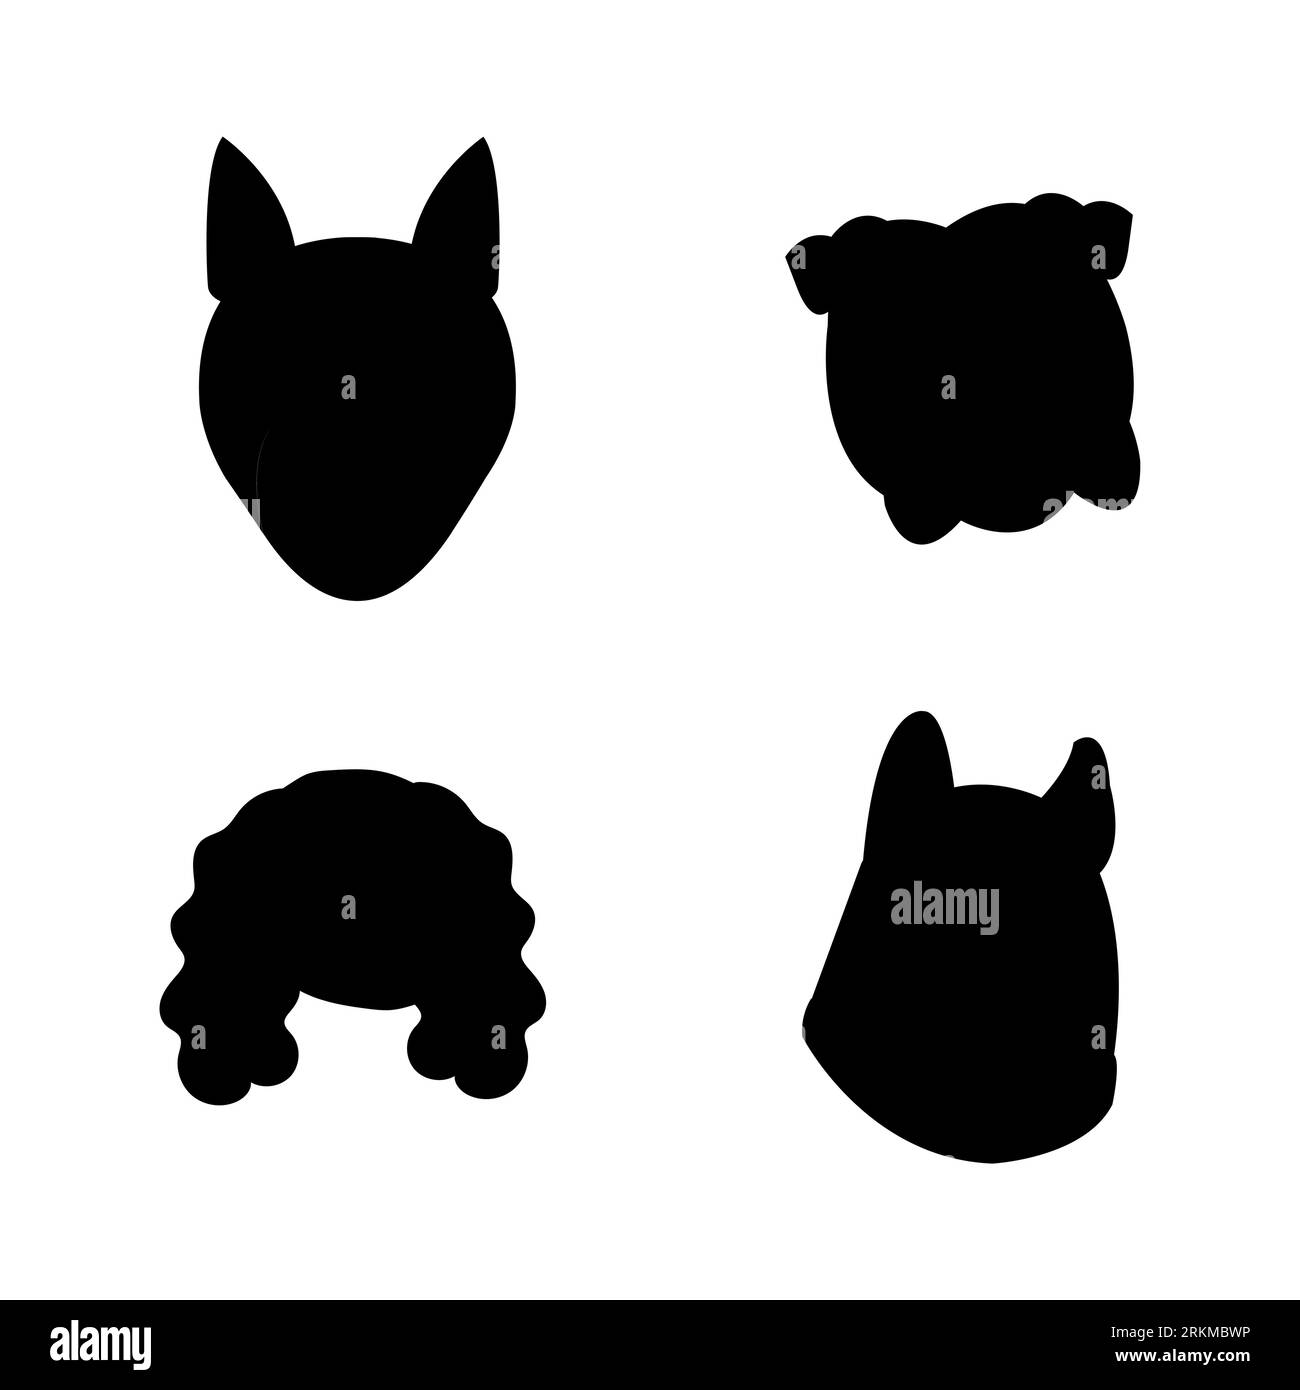 Silhouette noire de quatre mascottes de tête de chien, visages mignons de chiot, chien chiot, race caniche, husky, et vecteur pit bull isolé sur fond blanc Illustration de Vecteur